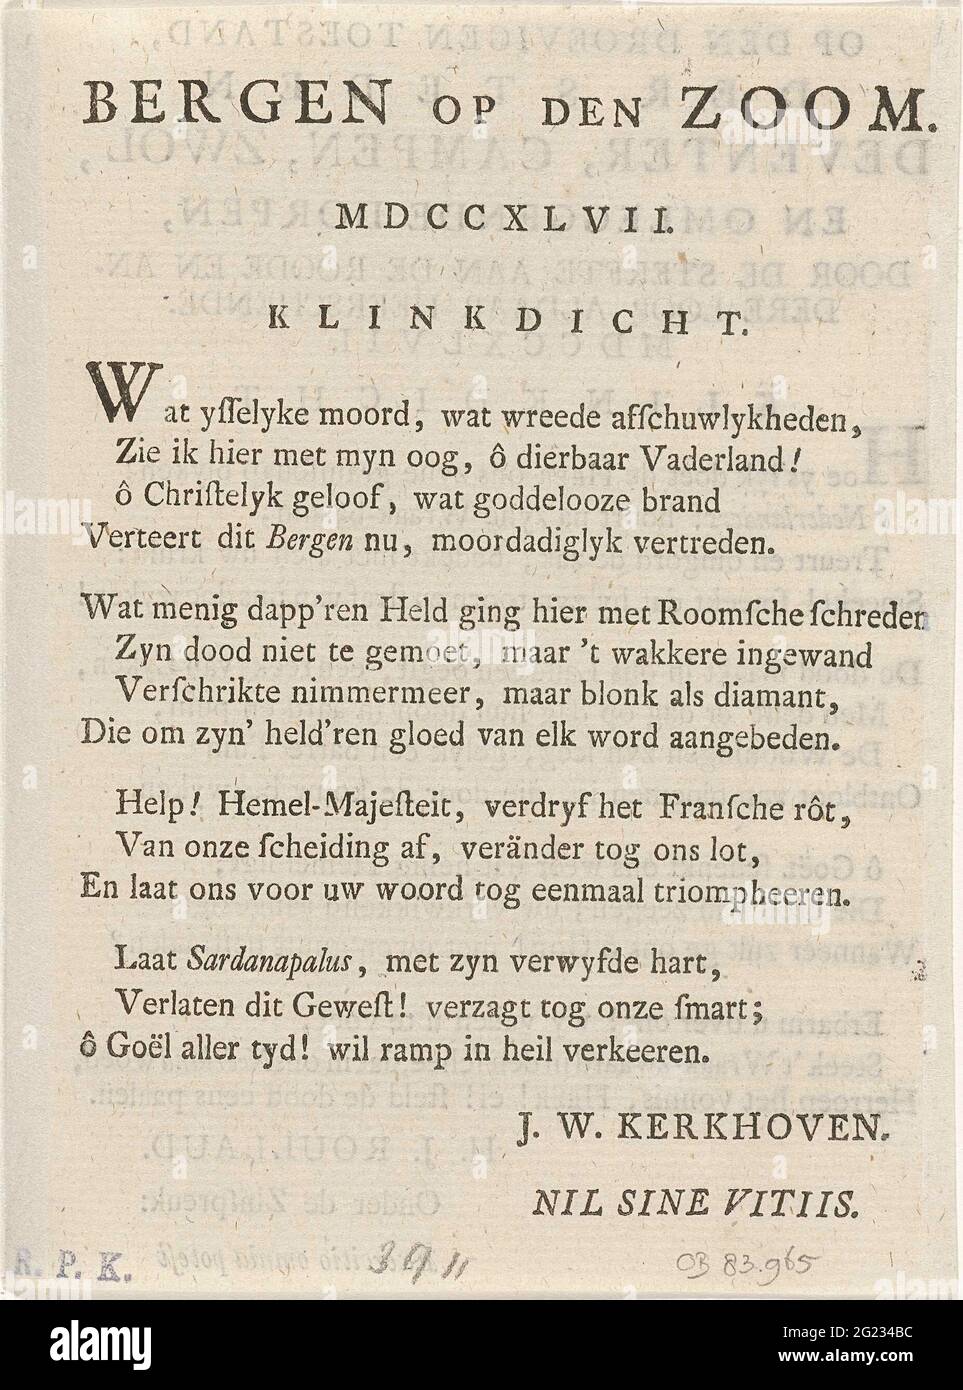 Frisch auf der Spitze von Bergen op Zoom, 1747; Berge am Saum. MDCCXLVII. Textblatt mit einem Niet zum Belag von Bergen op Zoom durch die Franzosen im Juli-September 1747. Blatt aus einem Buch entnommen und beidseitig bedruckt. Stockfoto